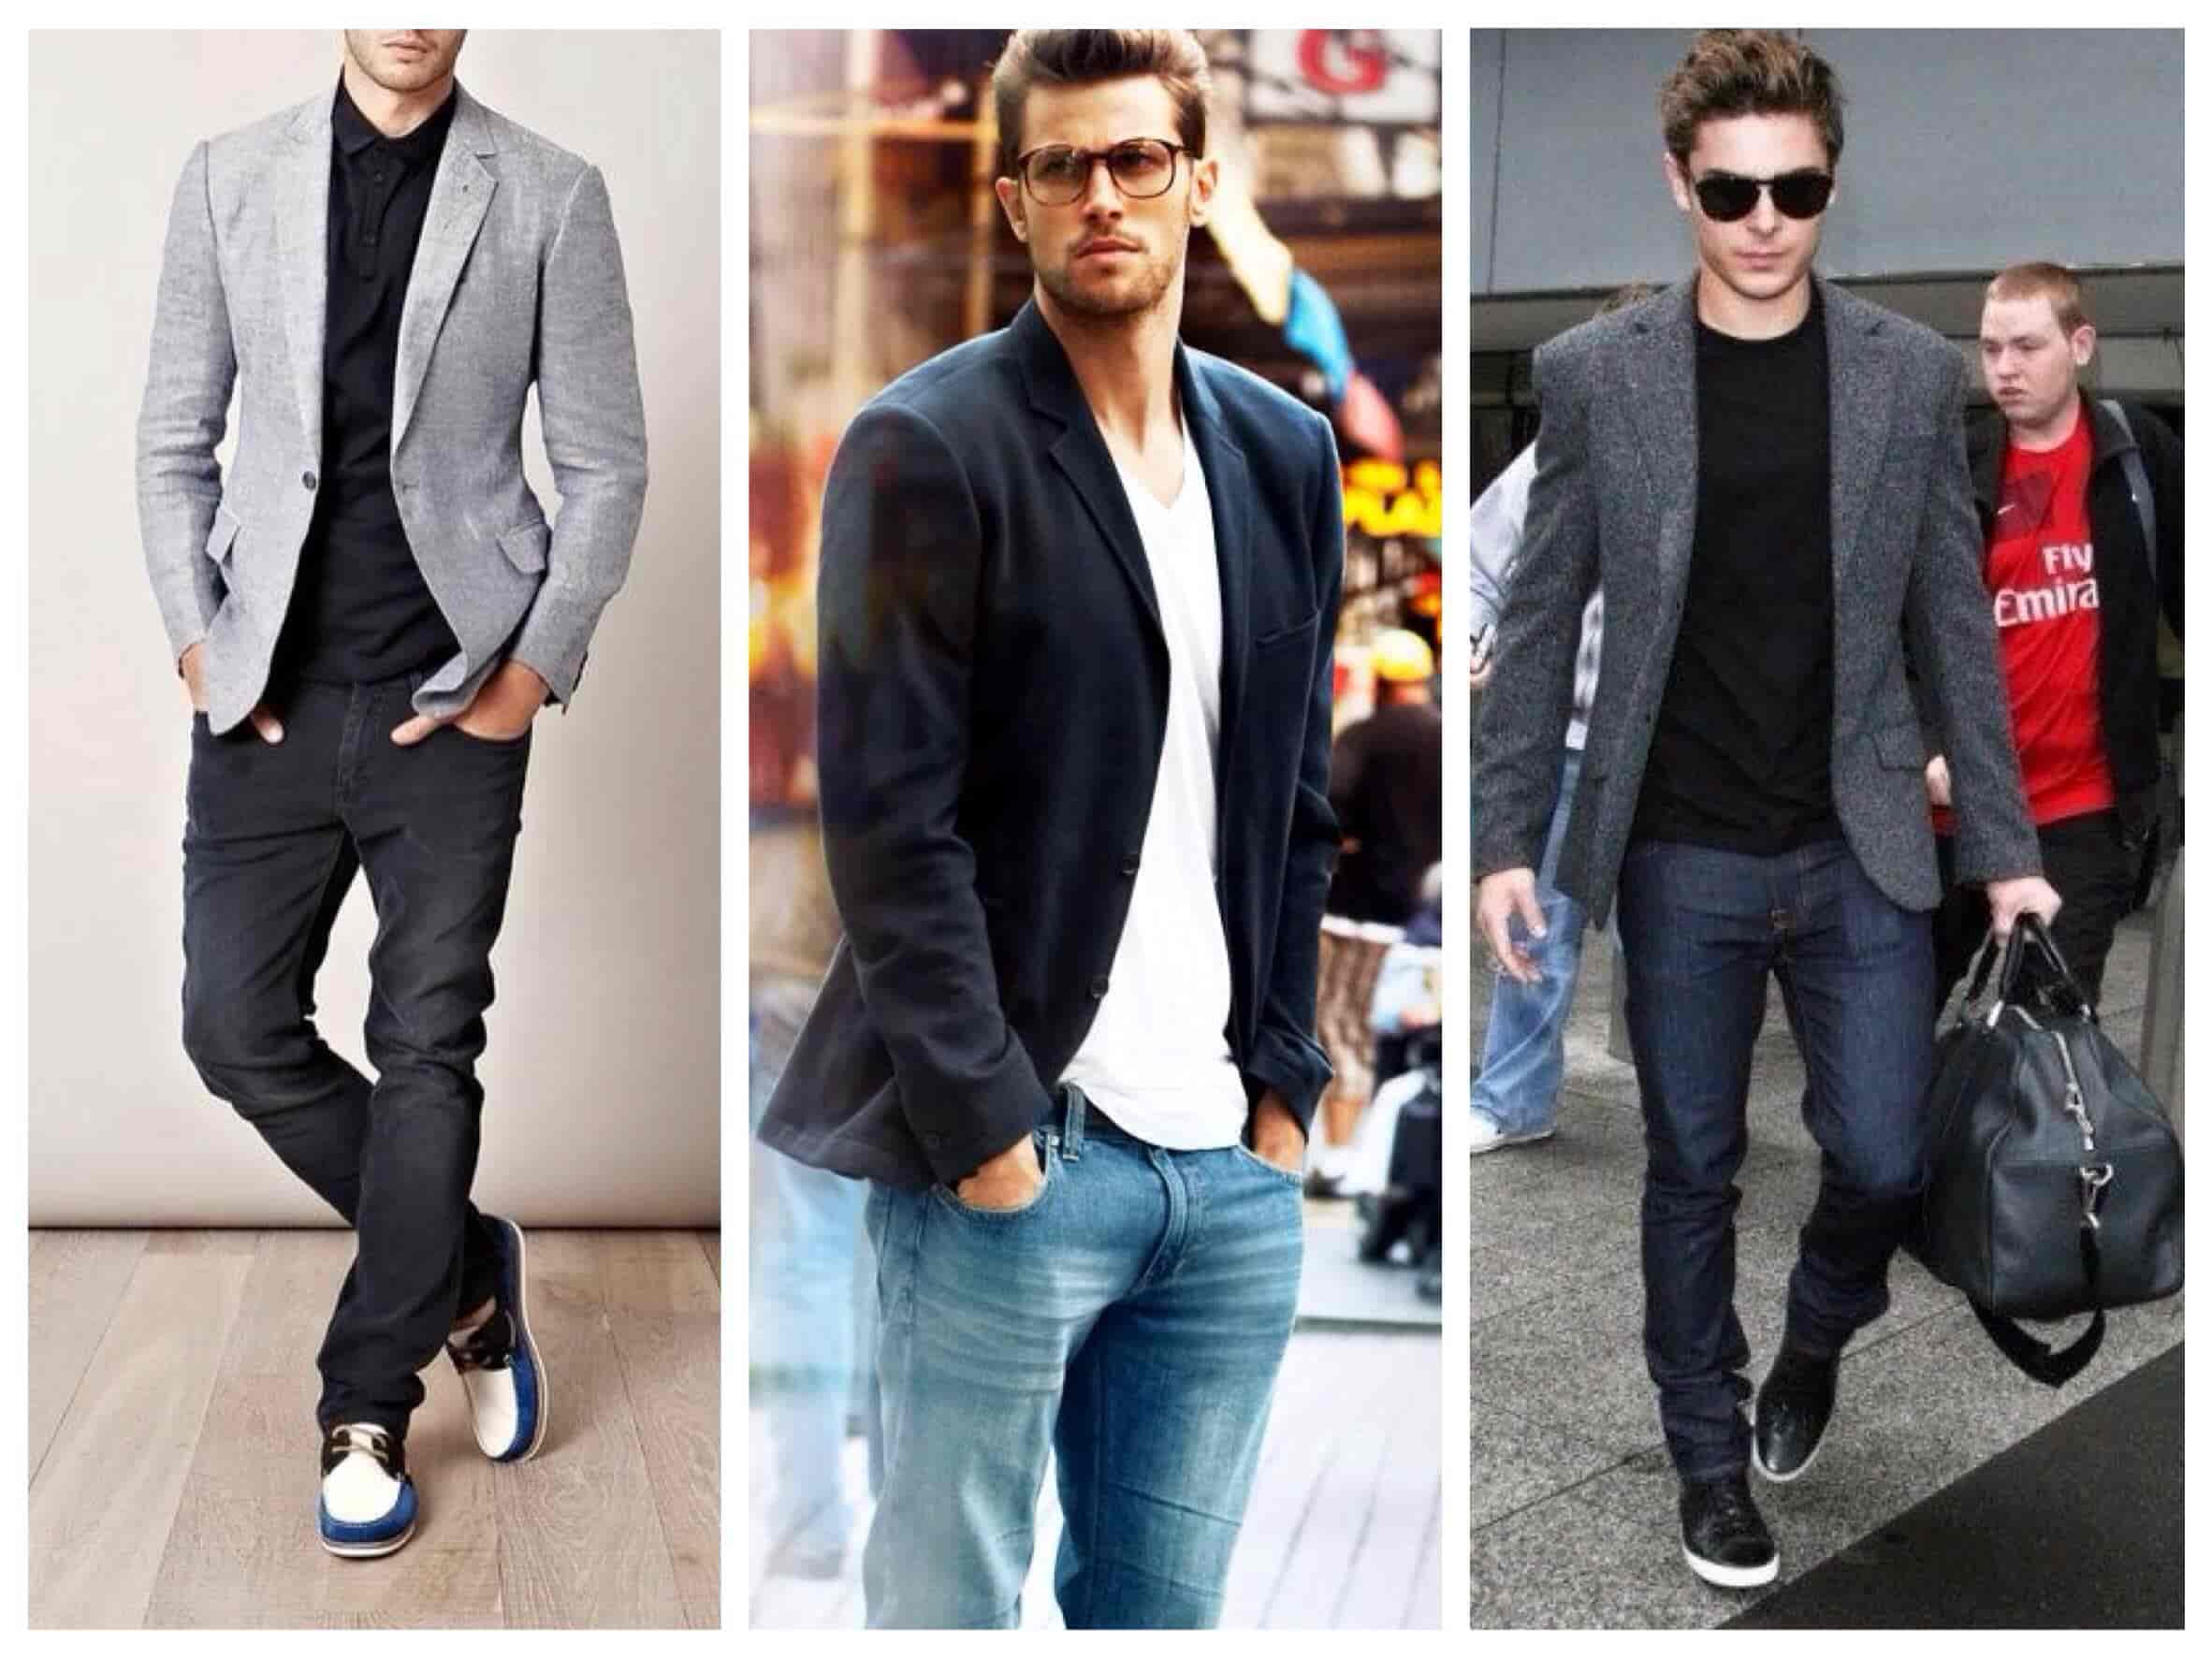 Мужские пиджаки под джинсы (110+ фото): как правильно выбрать и сочетать стильный пиджак с джинсами, обзор фасонов и производителей8